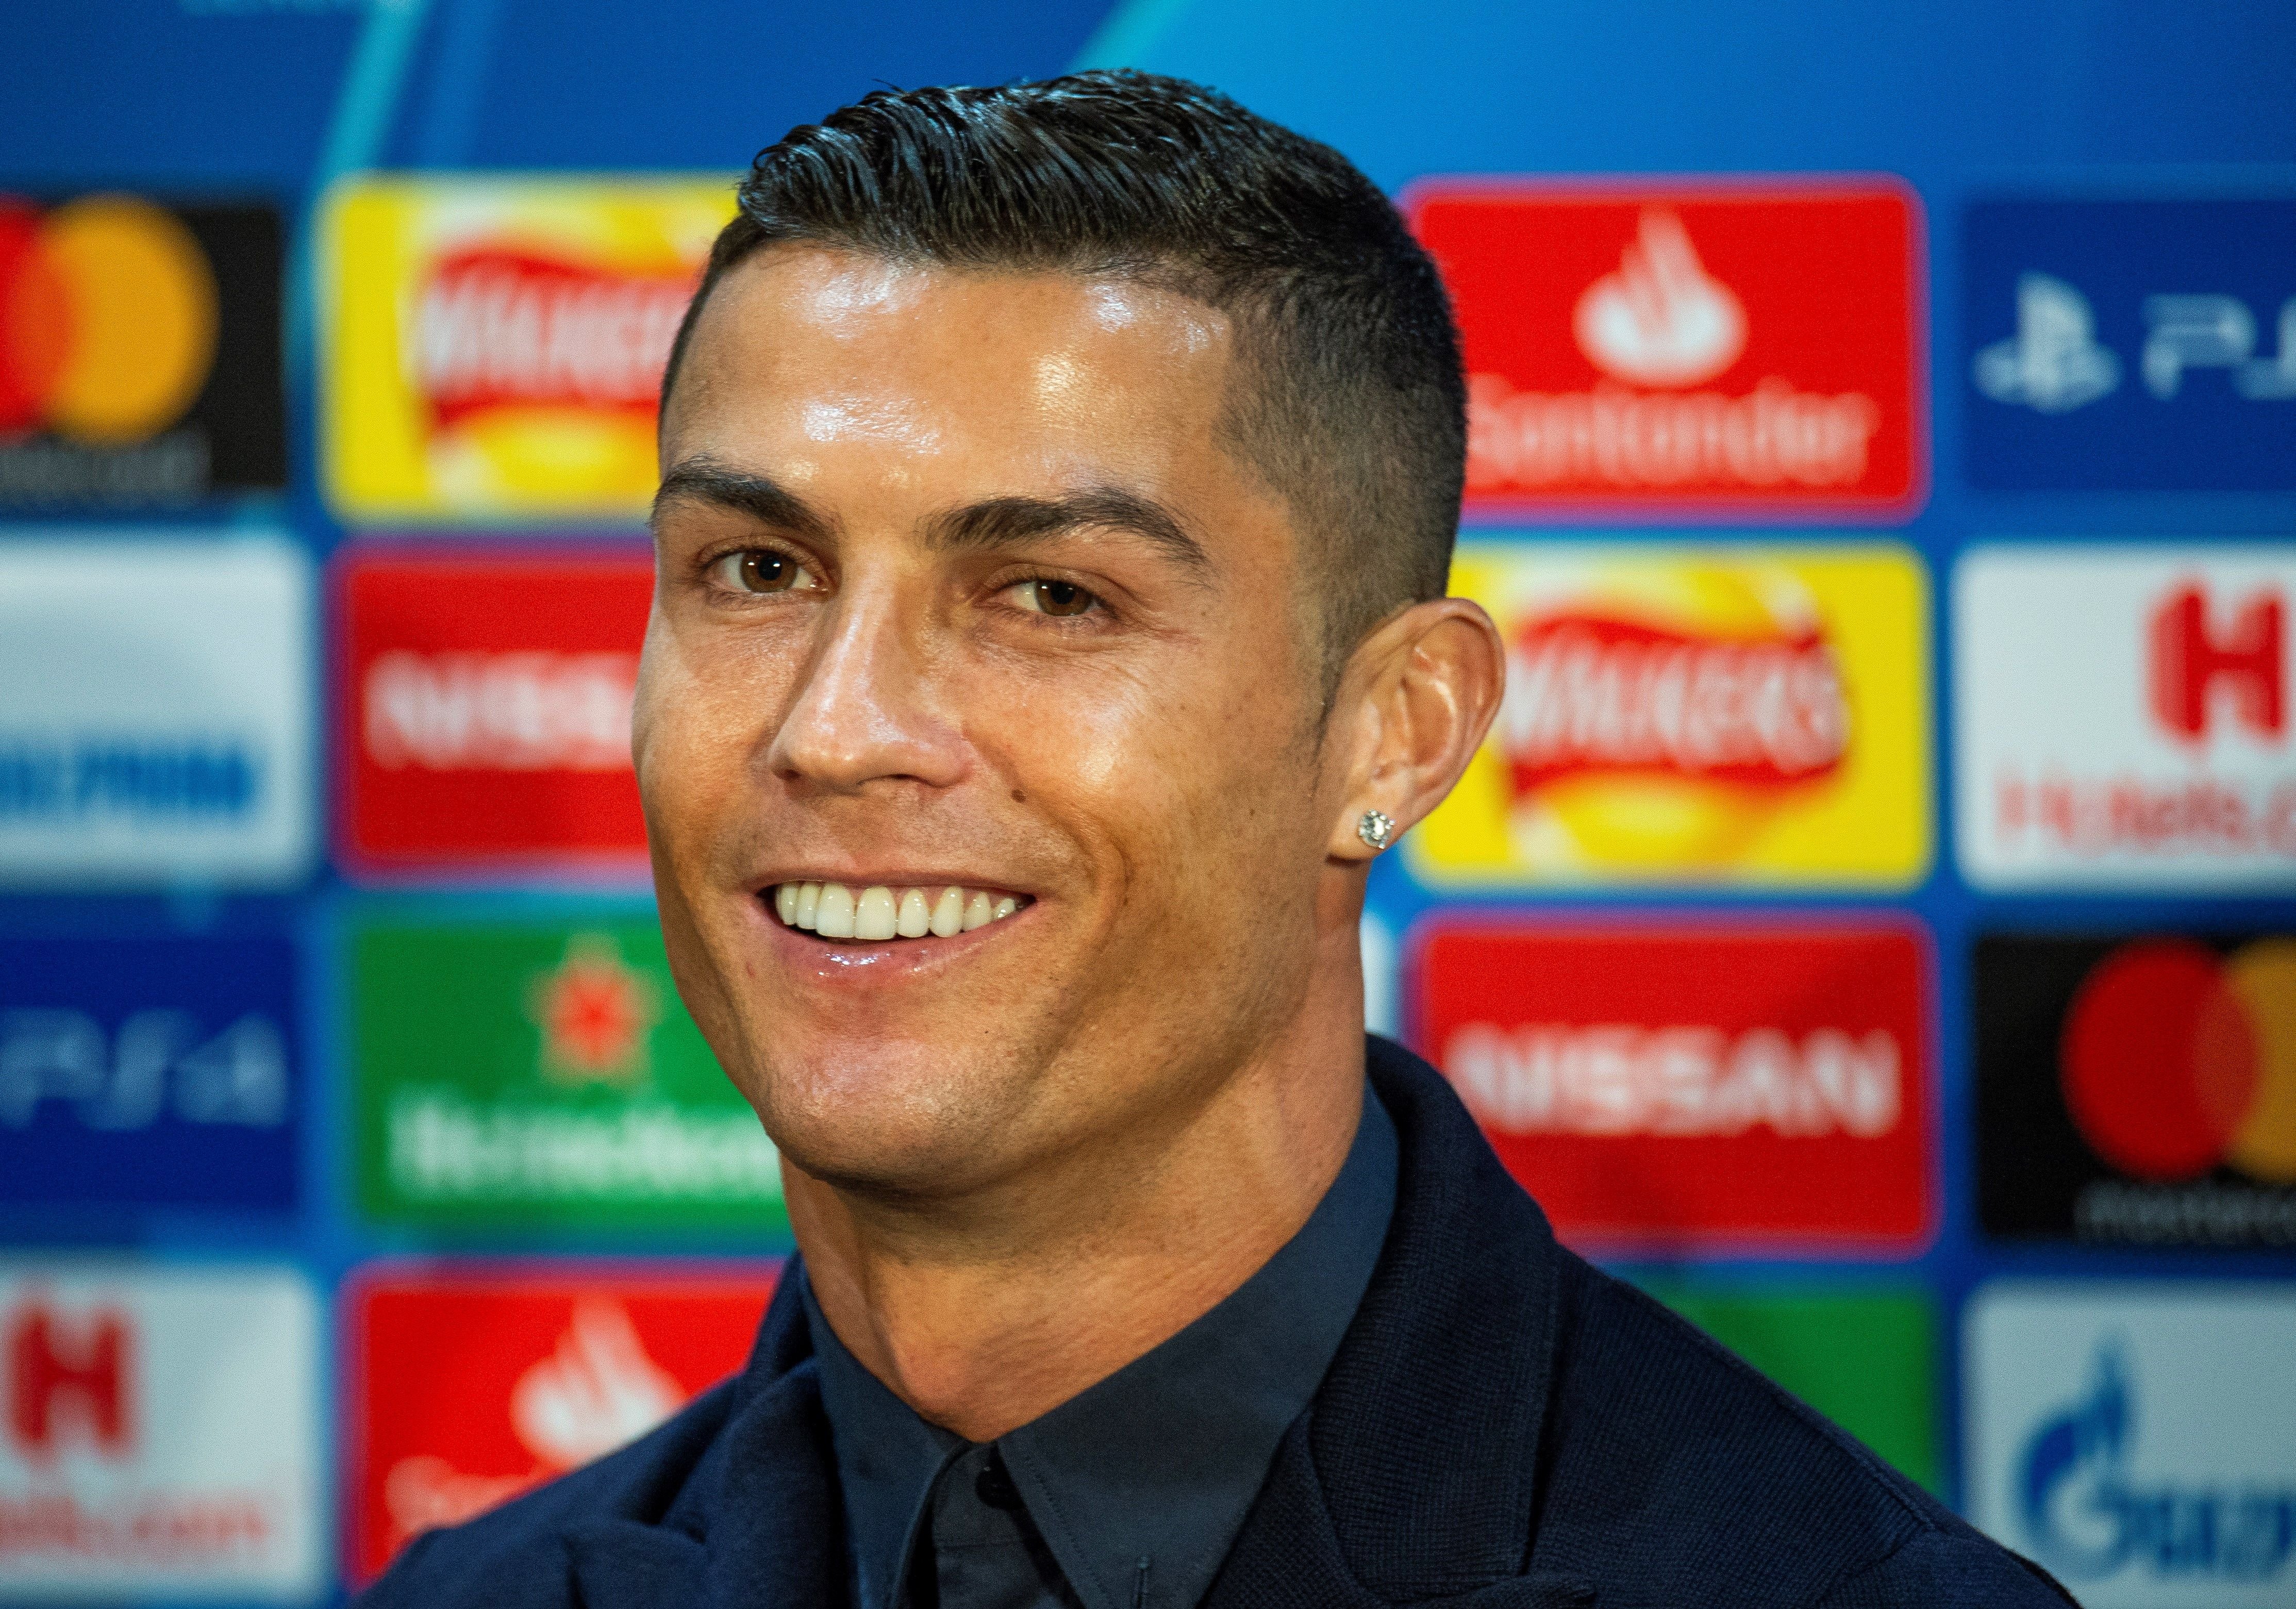 La nueva adquisición de Cristiano Ronaldo valorada en 2 millones de euros